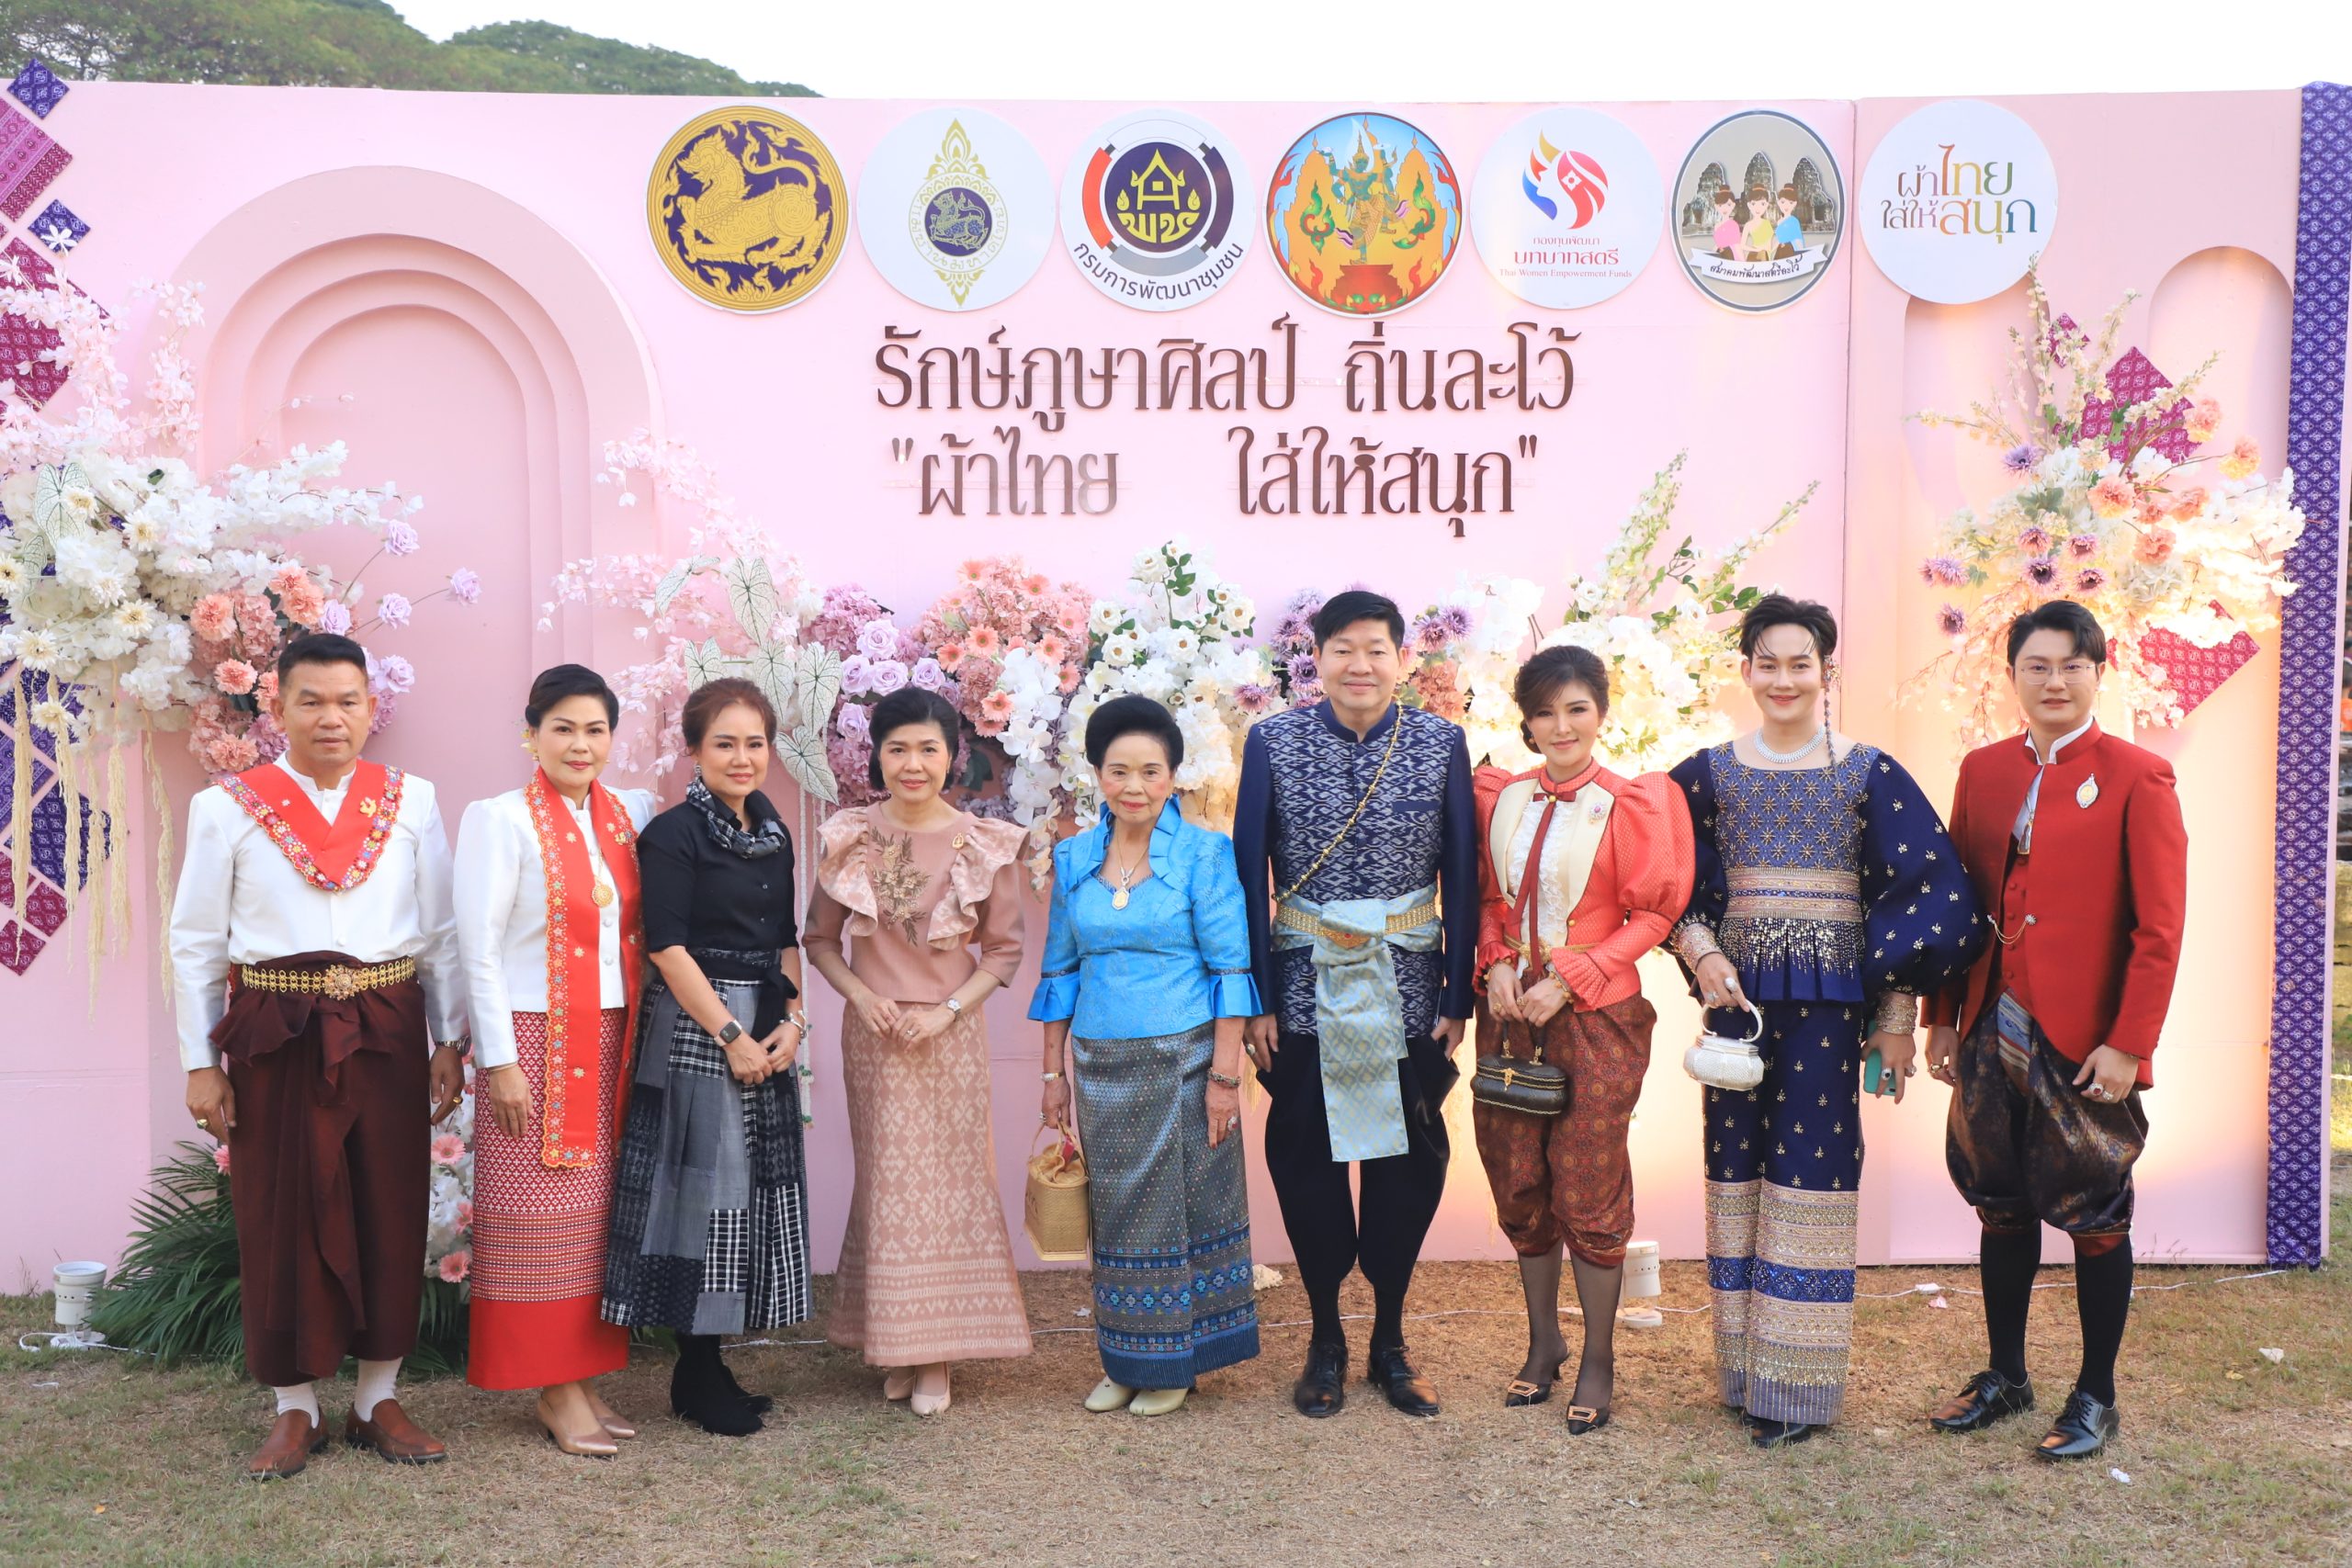 ลพบุรี-พัฒนาชุมชนจัดโครงการรักษ์ภูษาศิลป์ถิ่นละโว้ผ้าไทยใส่สนุกยกระดับการท่องเที่ยว